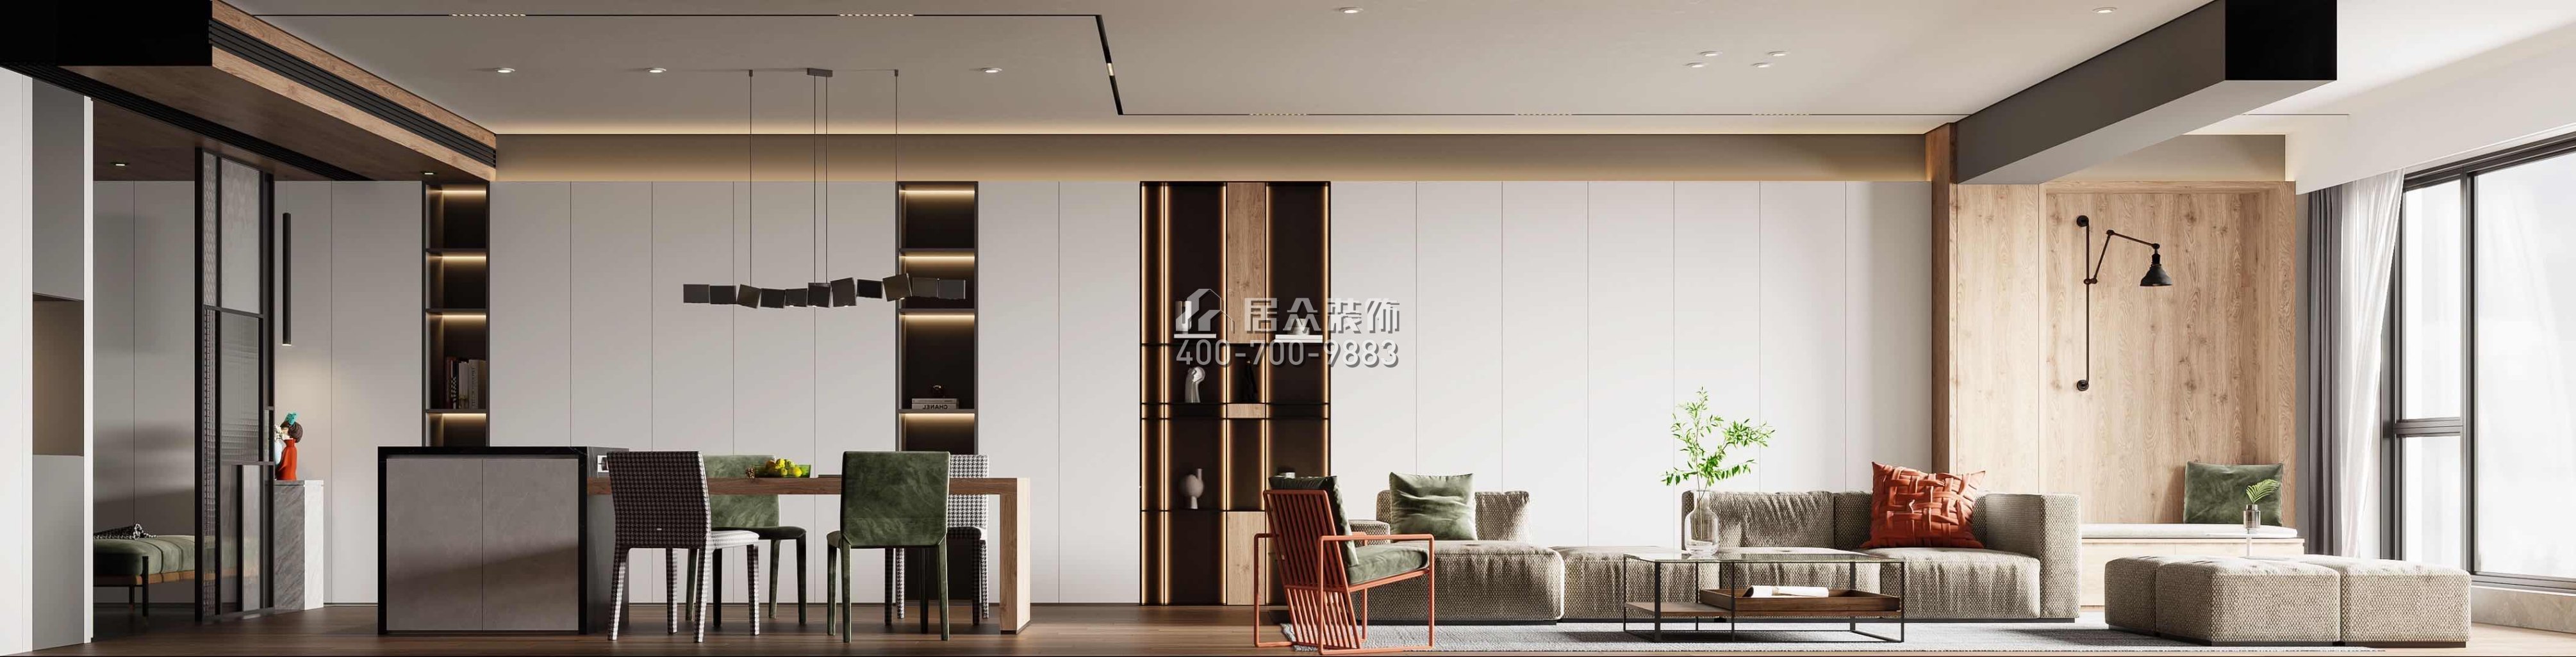 中建江山壹号197平方米现代简约风格平层户型客餐厅一体装修效果图